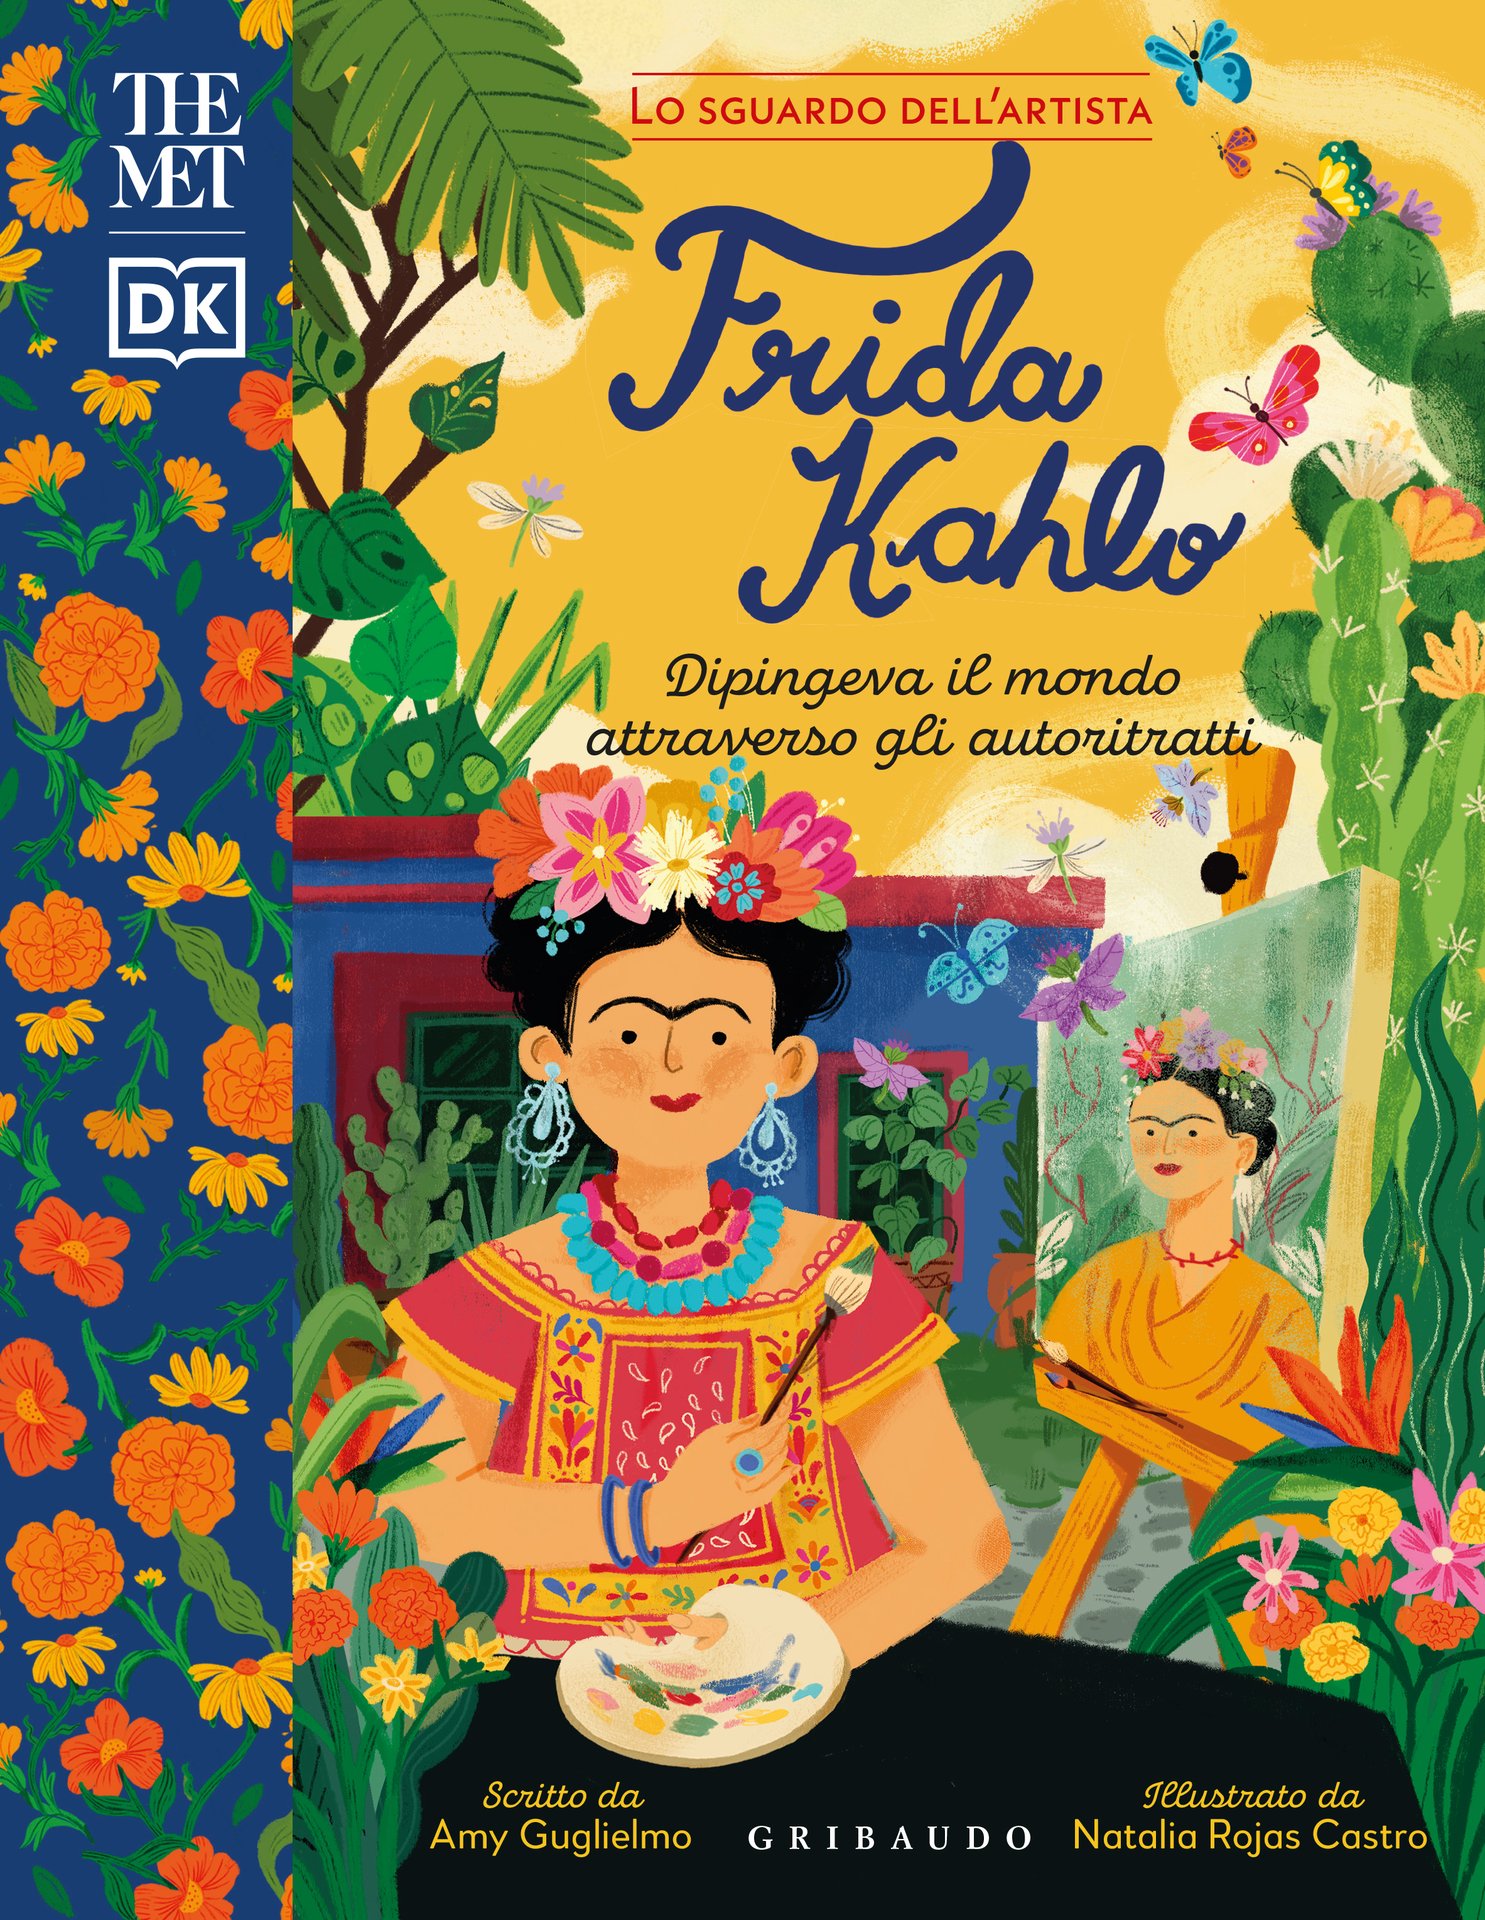 Frida Kahlo – The MET